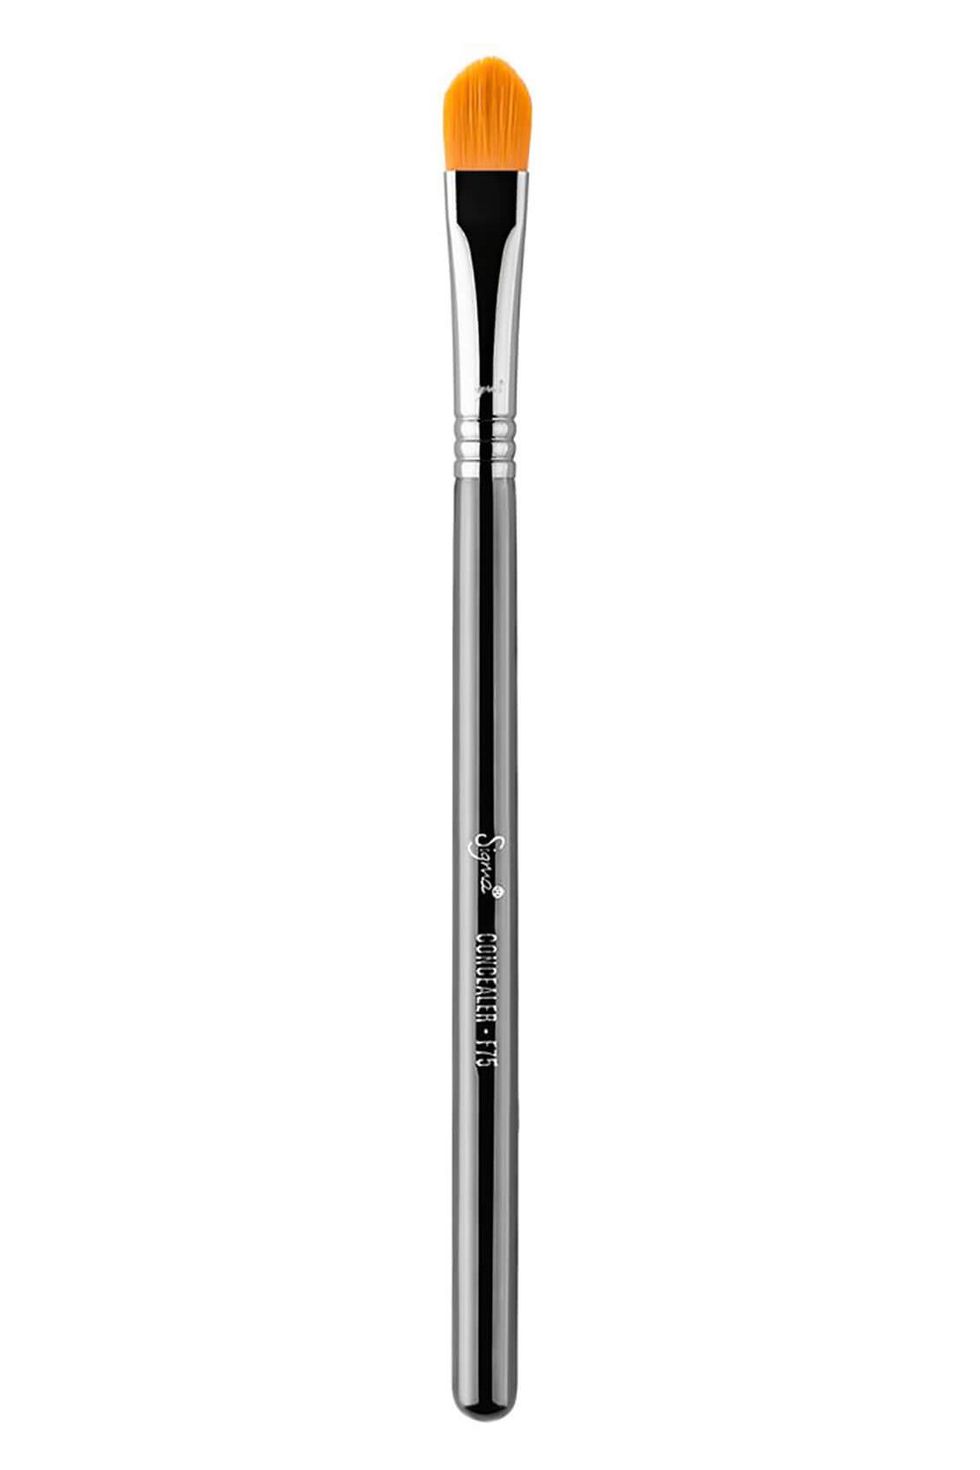 Sigma F75 - Concealer Brush